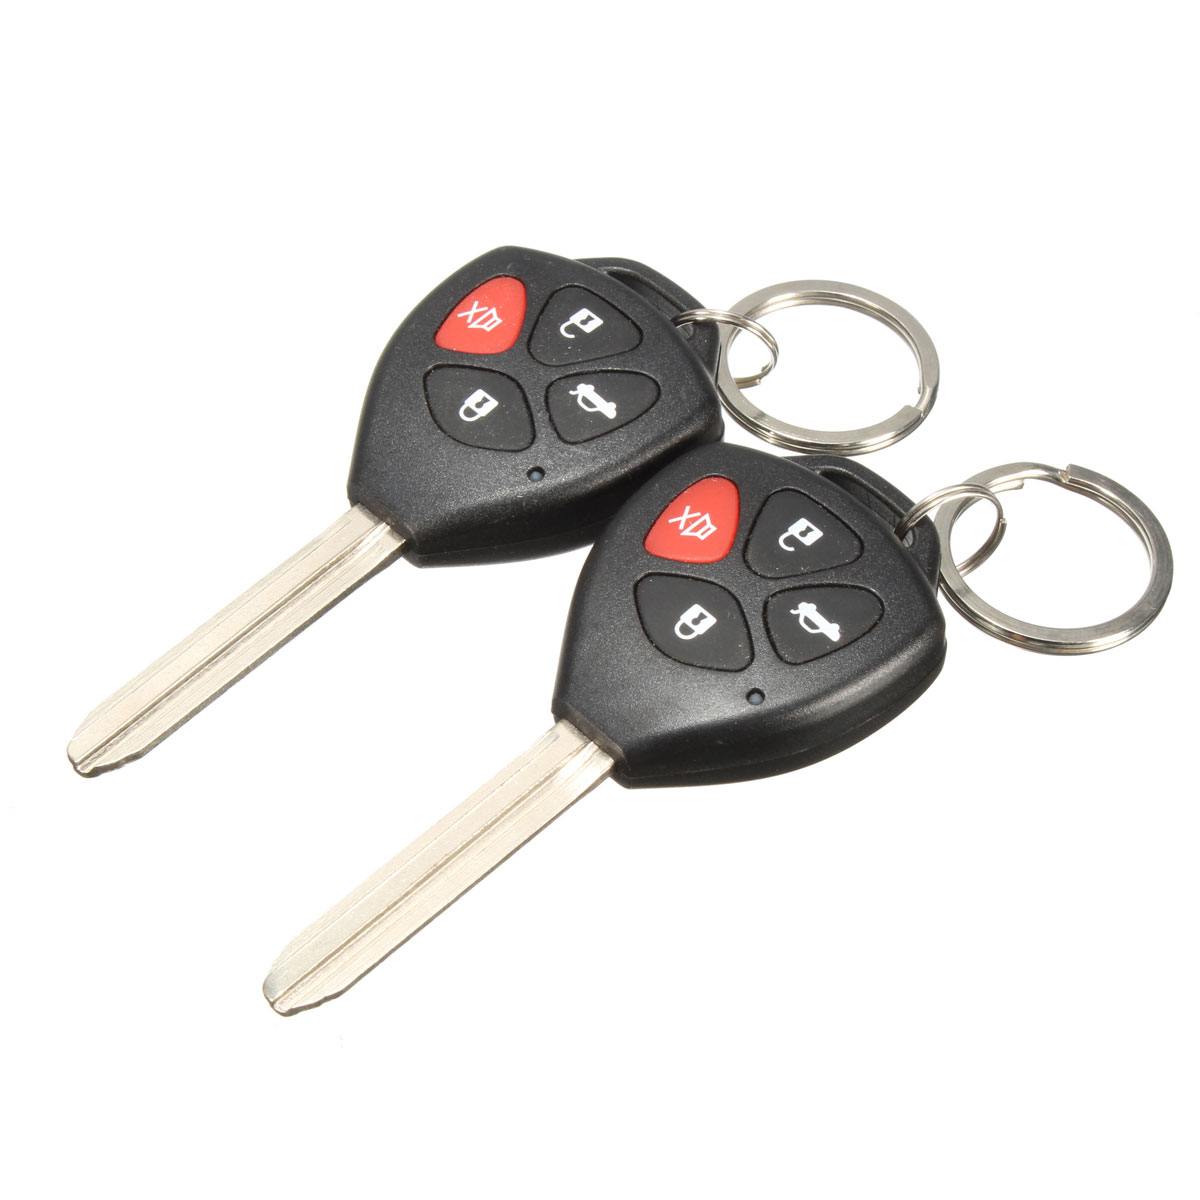 Car-Remote-Control-Burglar-Alarm-Keyless-Lock-Entry-System-For-Toyota-2-Remote-1125338